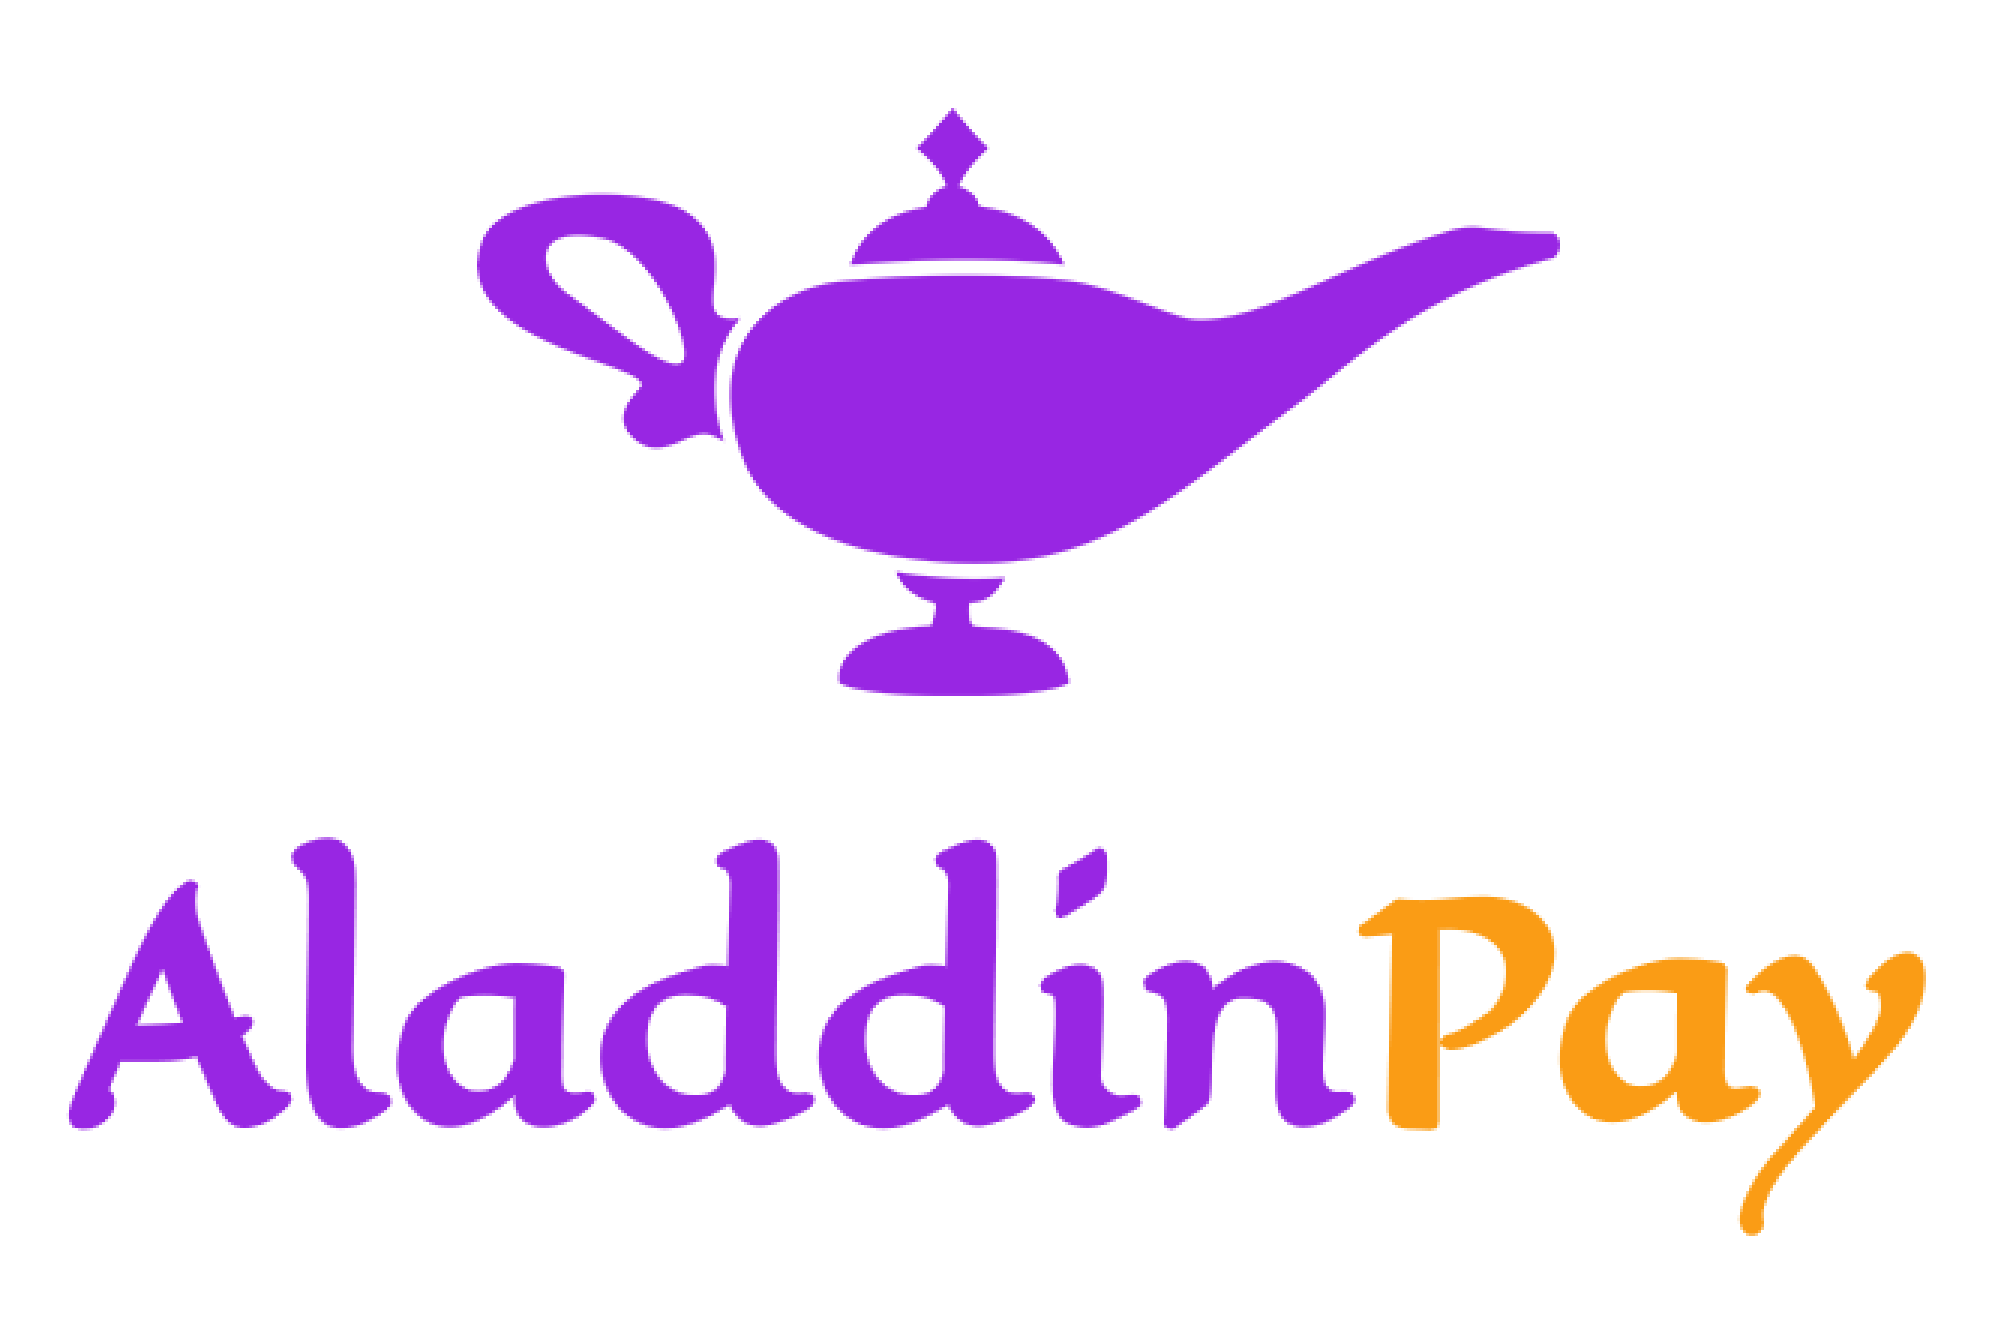 Logo AladdinPay